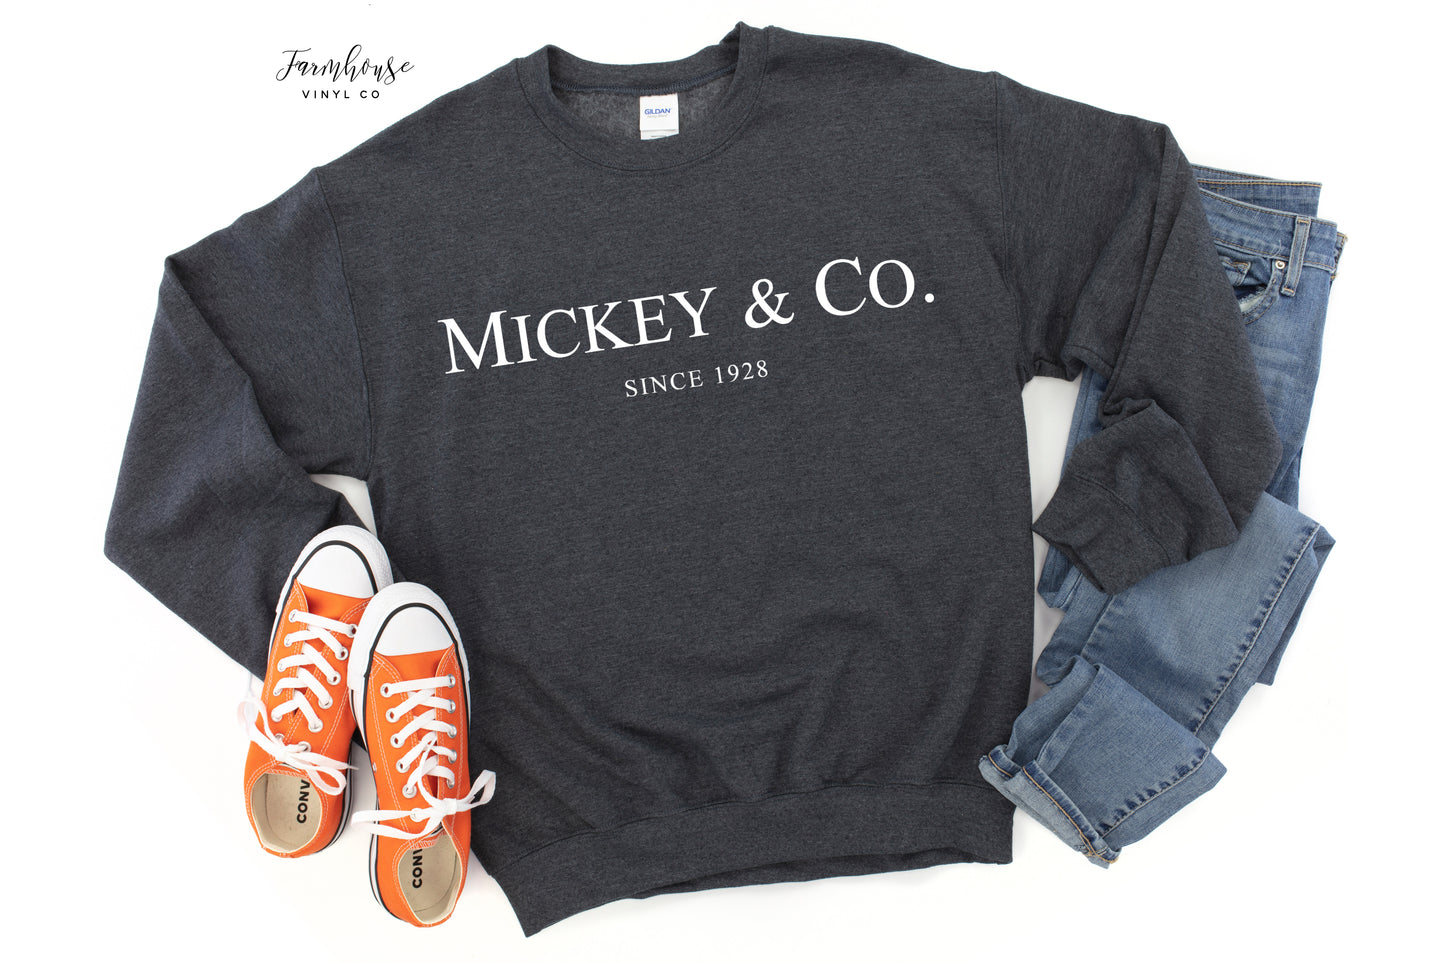 Mickey & Co. Est. 1928 Shirt Collection - Farmhouse Vinyl Co